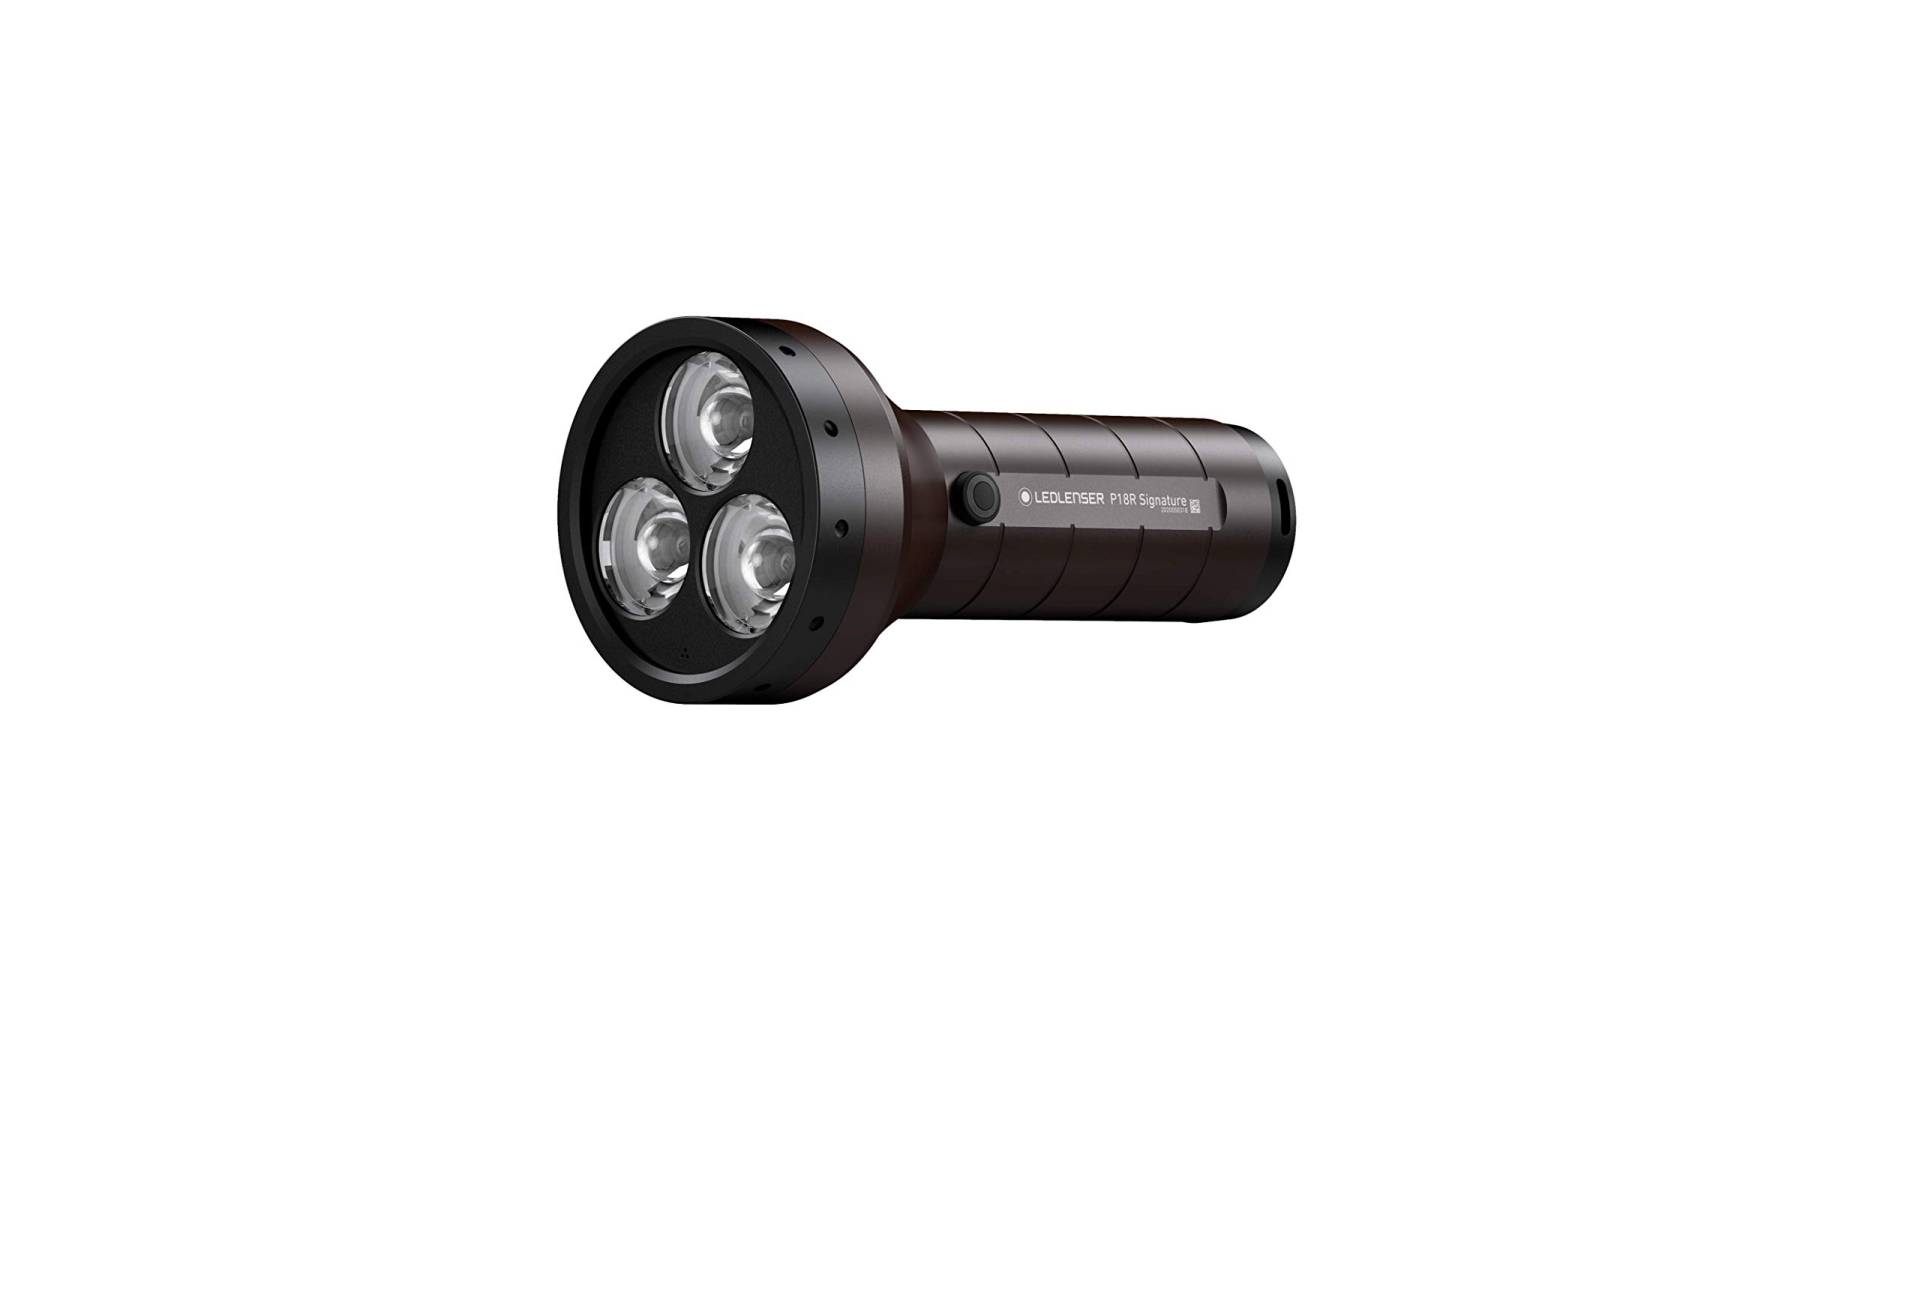 Ledlenser P18R Signature Premium Taschenlampe LED, Suchscheinwerfer, aufladbar mit Lithium Akku, 4500 Lumen, fokussierbar, X-Lens Technology, Leuchtweite 720 m, USB Magnetladekabel von Ledlenser